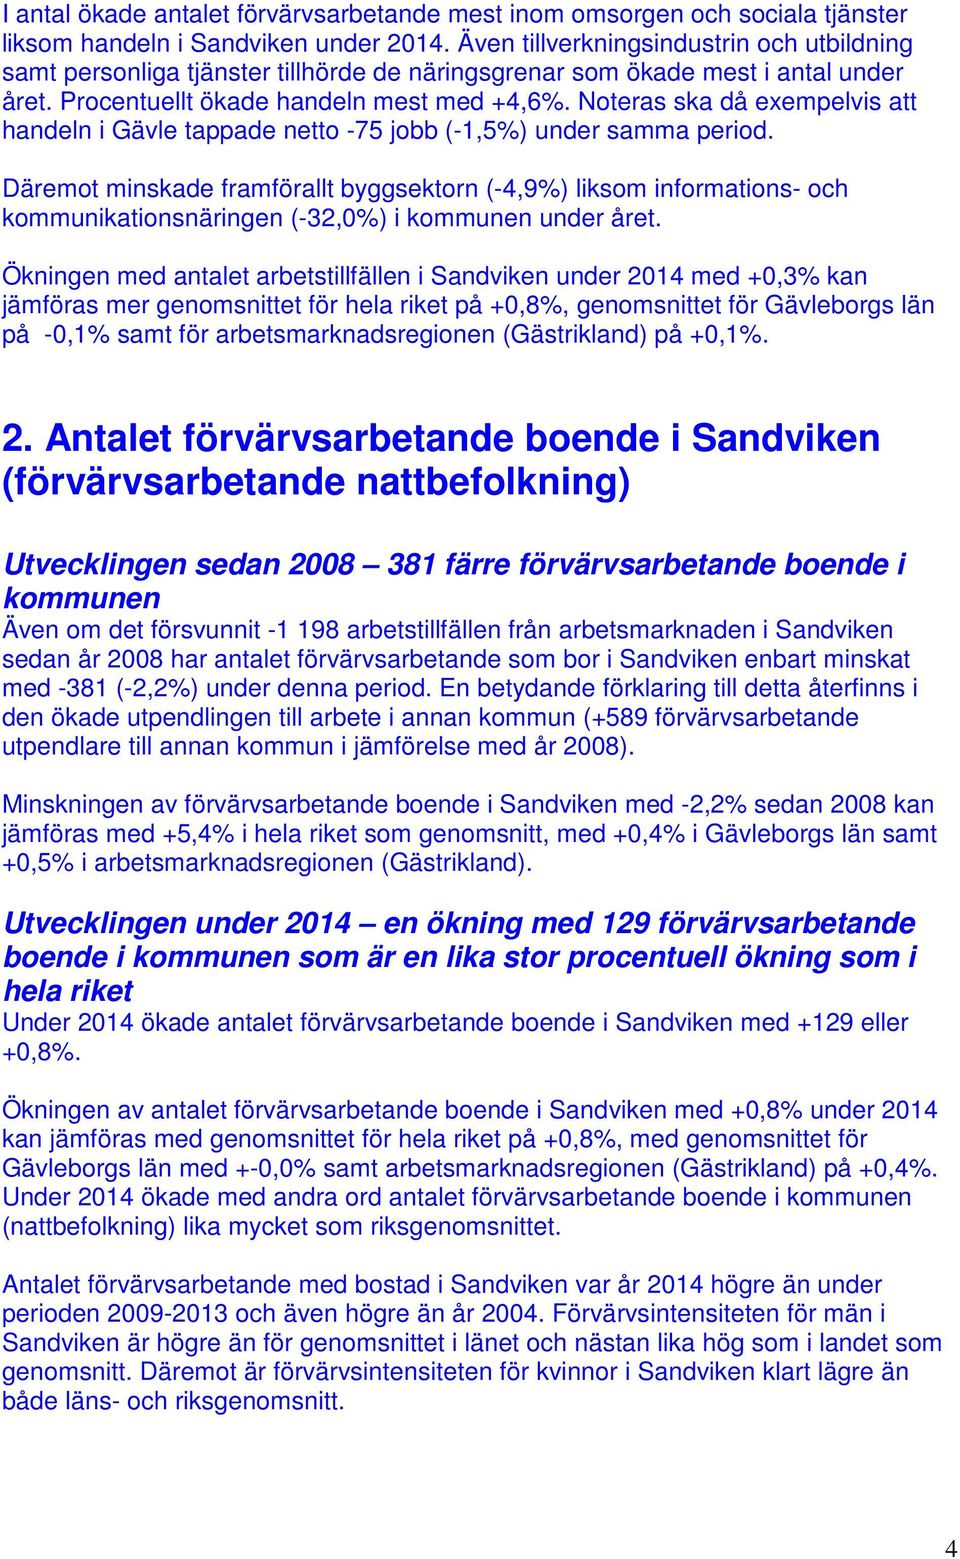 Noteras ska då exempelvis att handeln i Gävle tappade netto -75 jobb (-1,5%) under samma period.